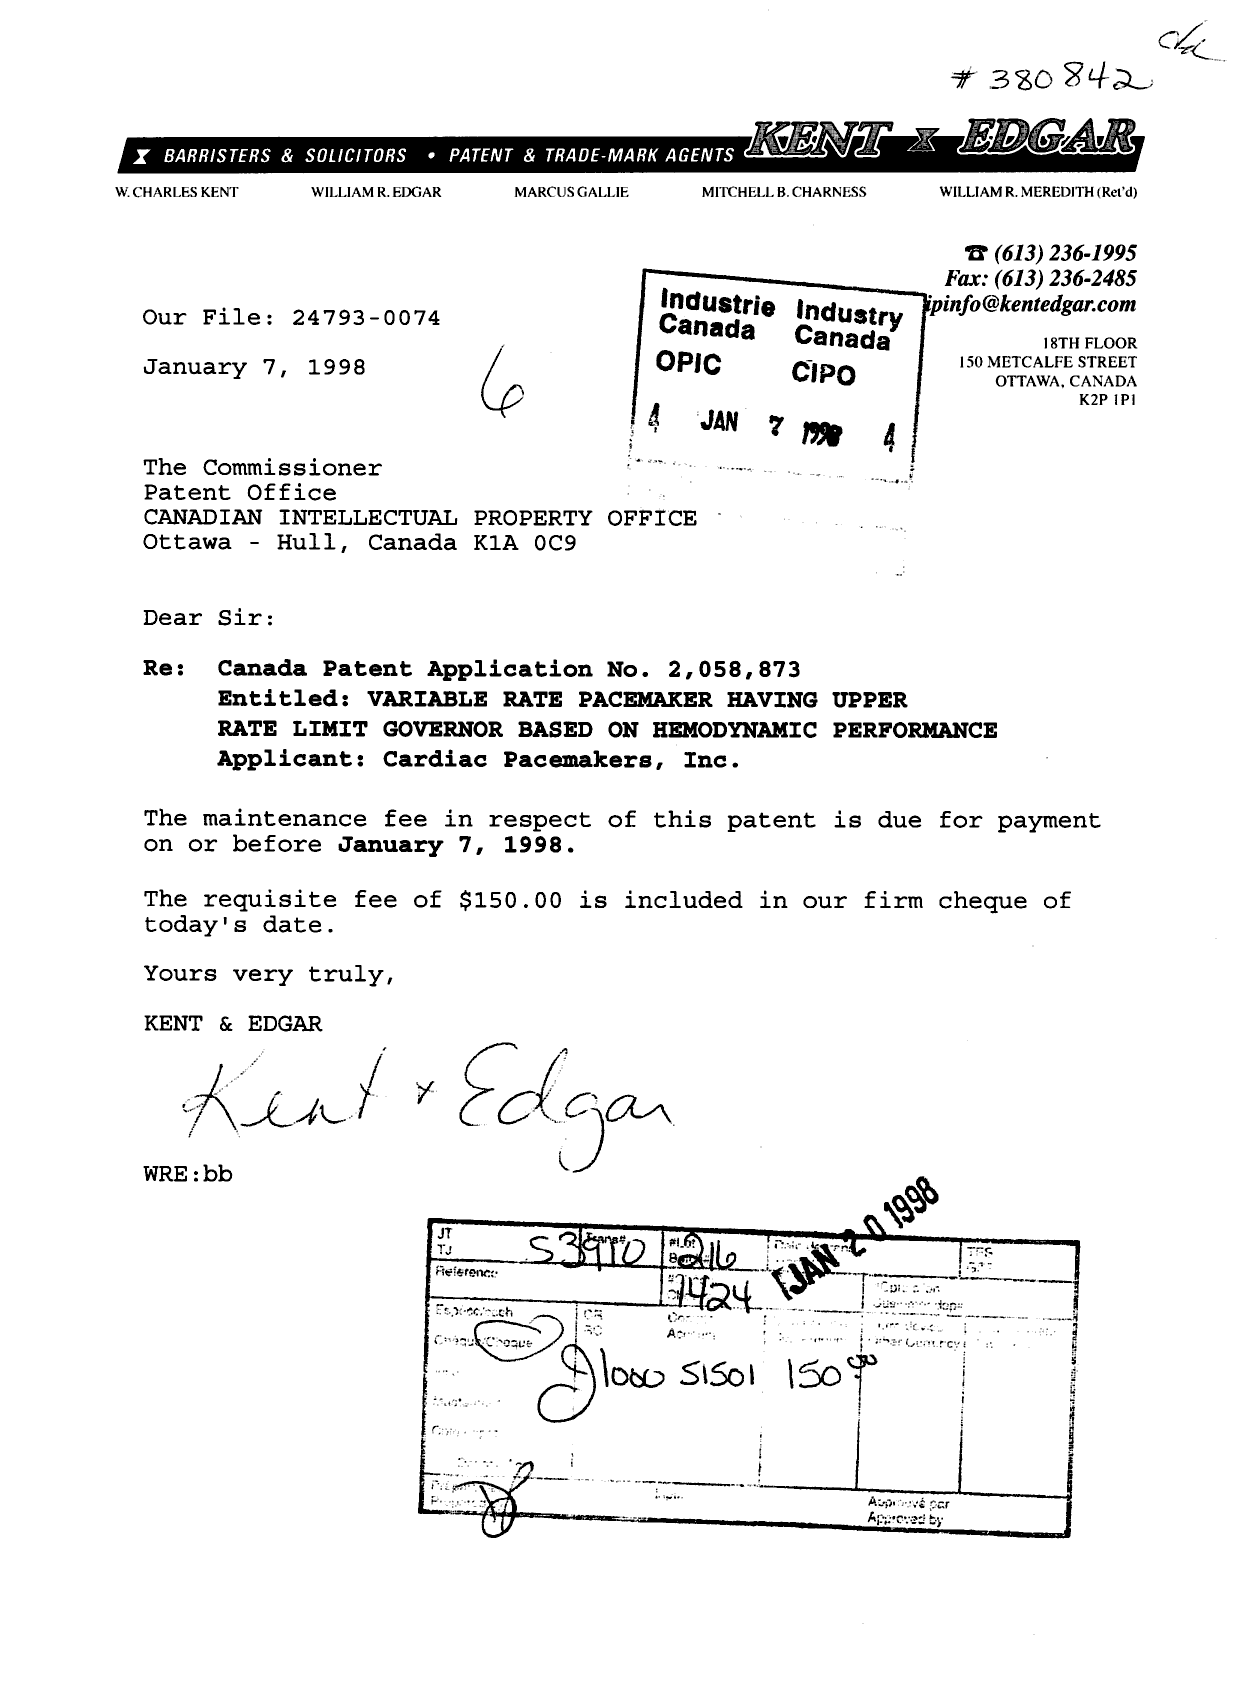 Document de brevet canadien 2058873. Taxes 19980107. Image 1 de 1